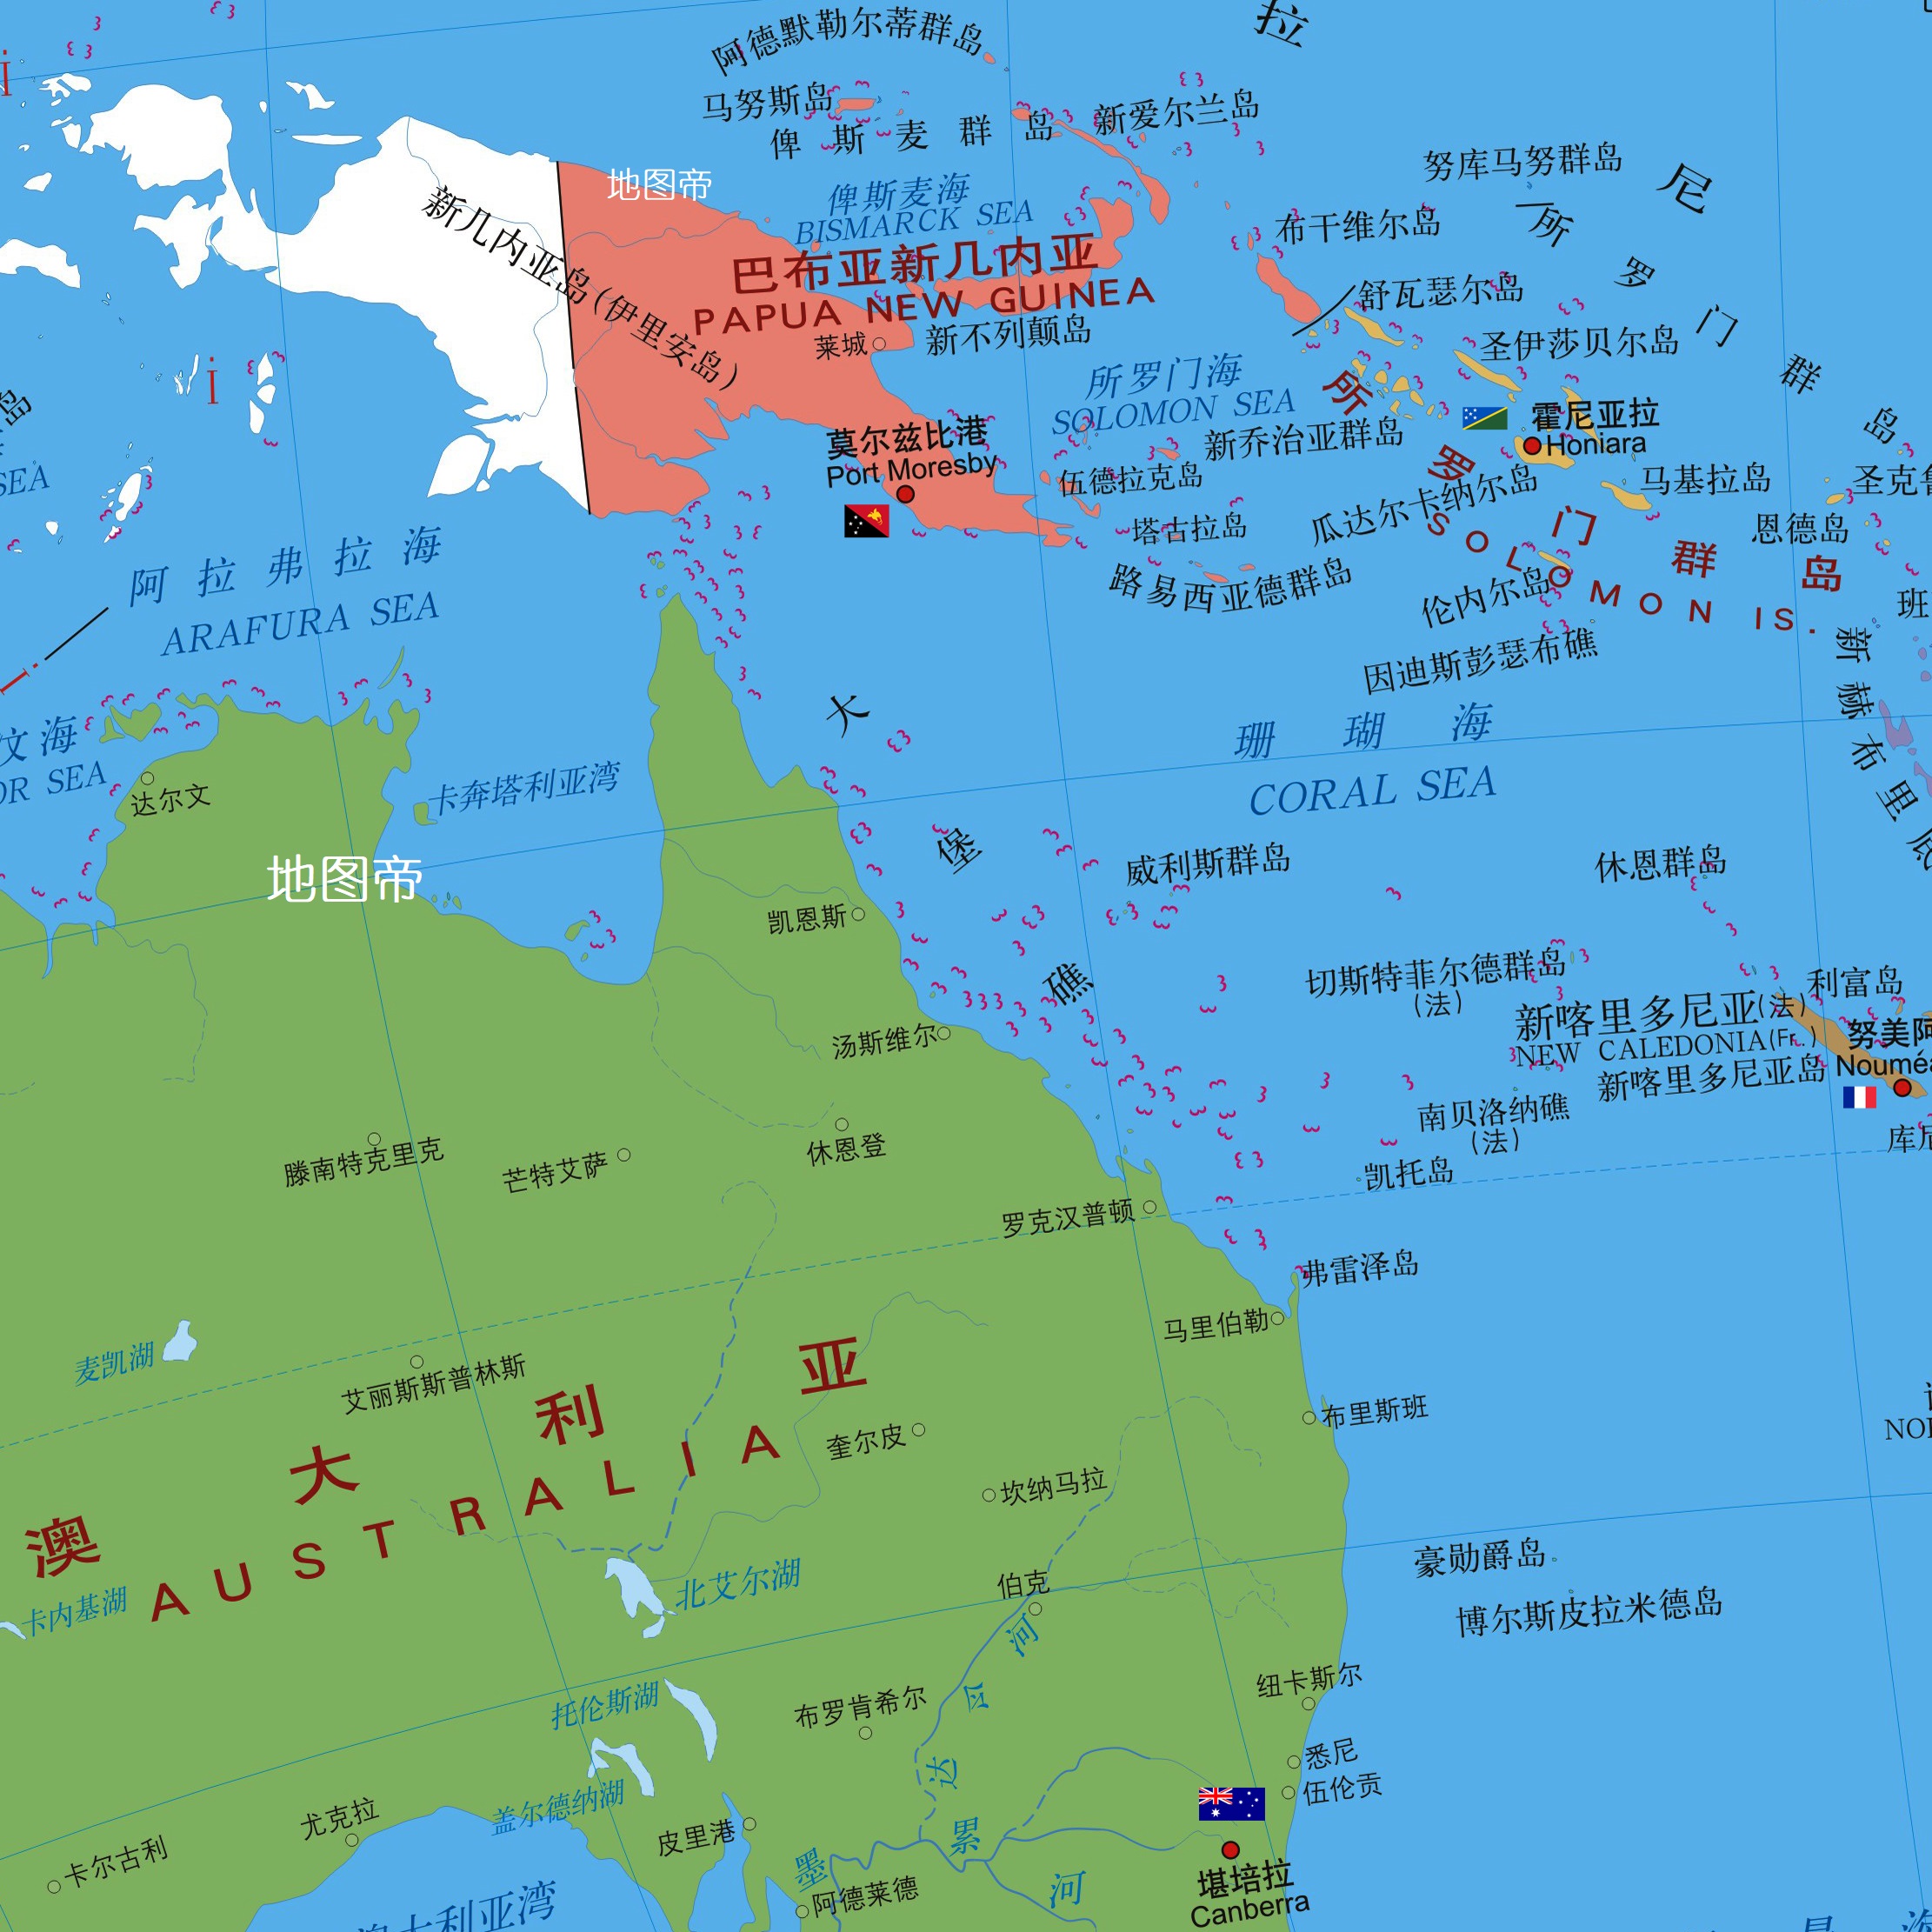 巴布亚新几内亚(简称巴新)南隔托雷斯海峡与澳大利亚相望,面积约46